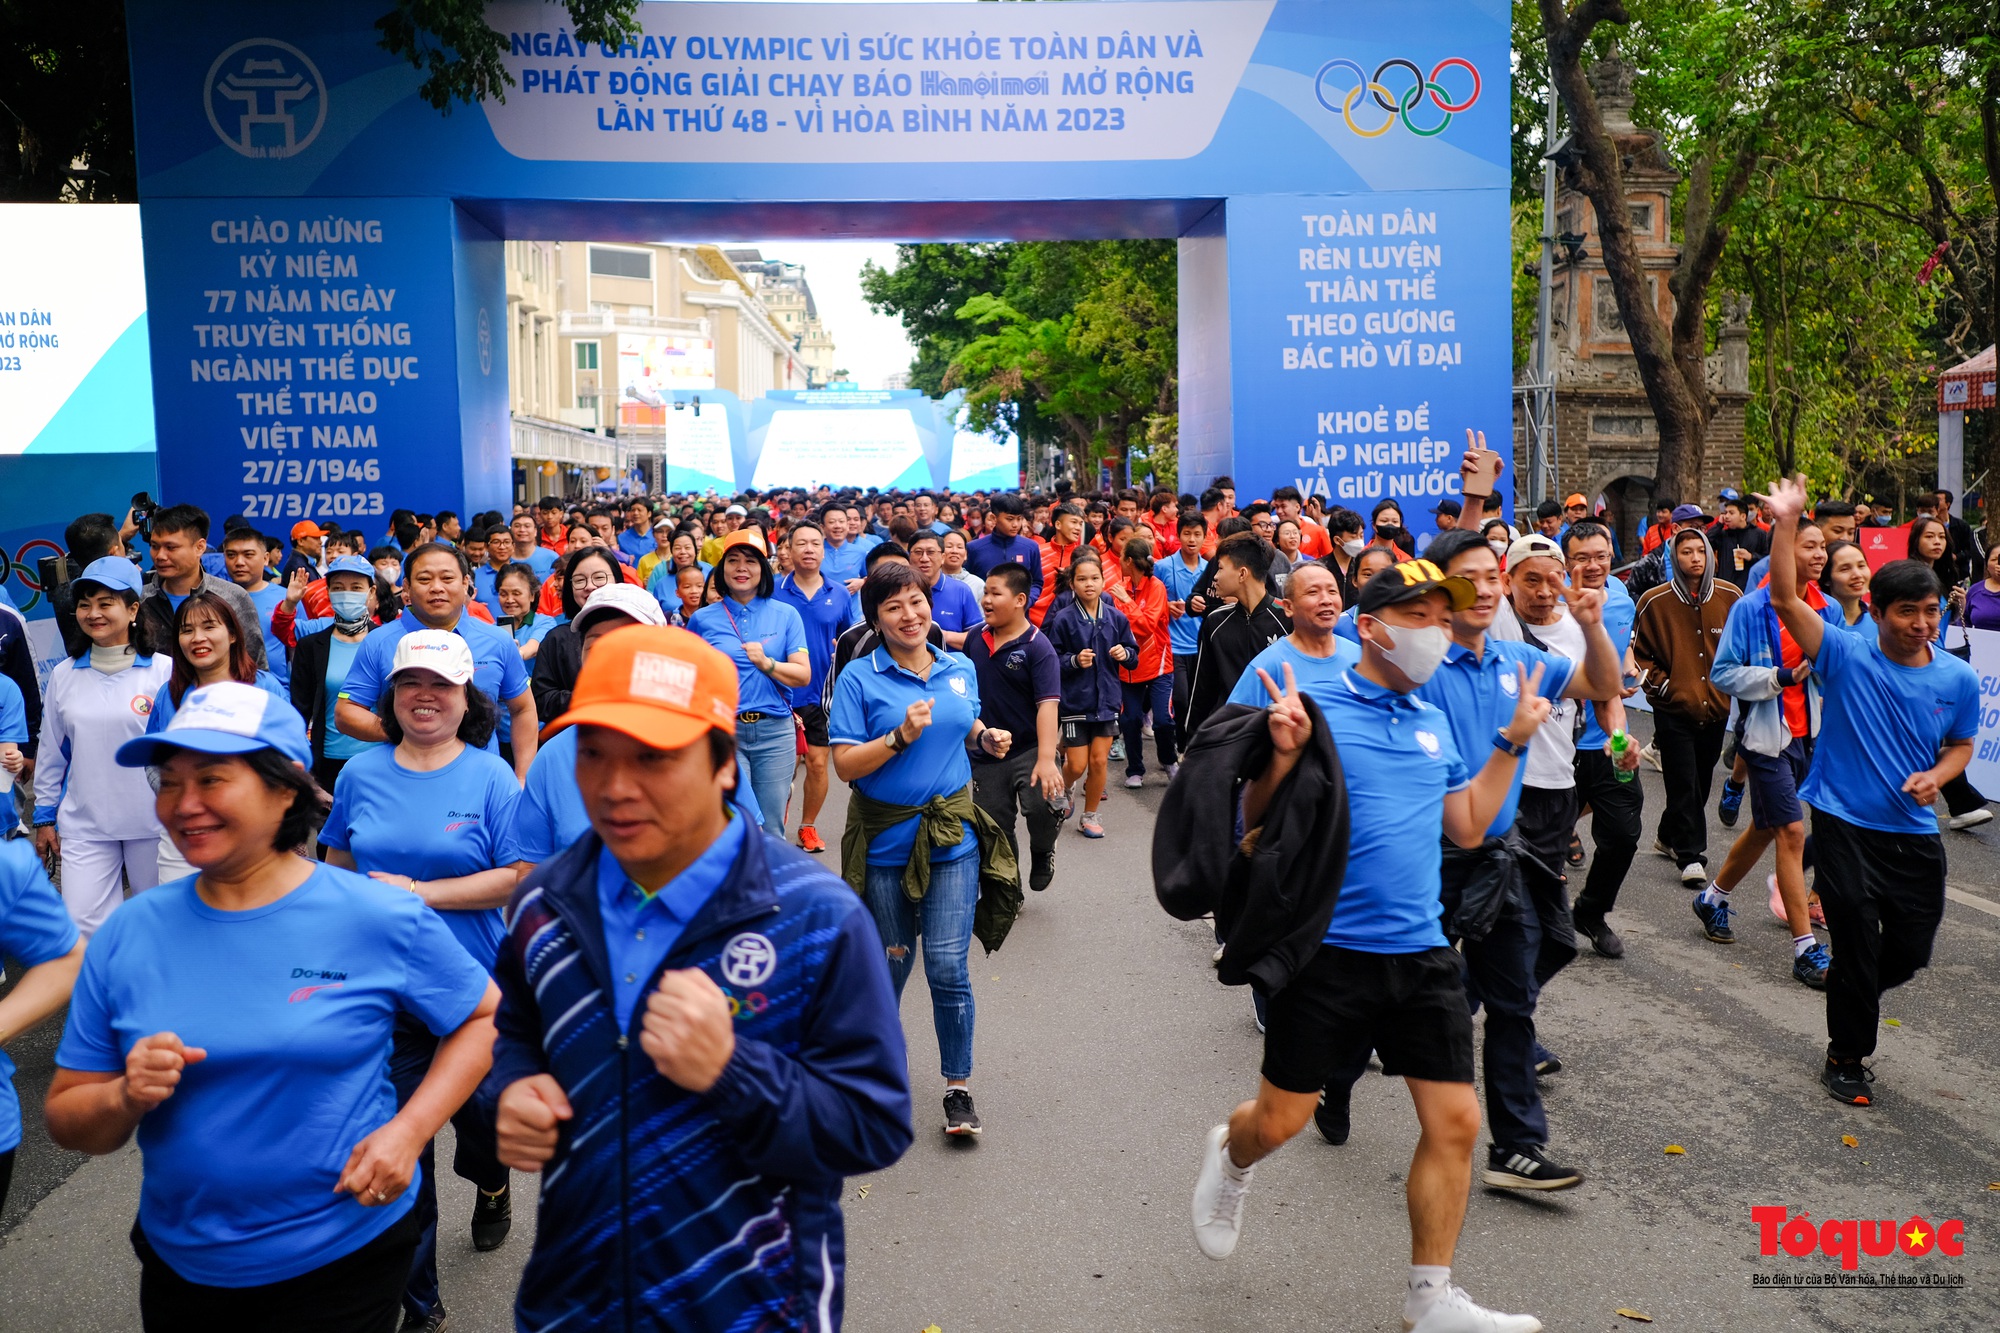 Hàng ngàn người tham gia ngày chạy Olympic toàn dân và Lễ phát động Giải chạy Báo Hànộimới mở rộng lần thứ 48 - Ảnh 4.